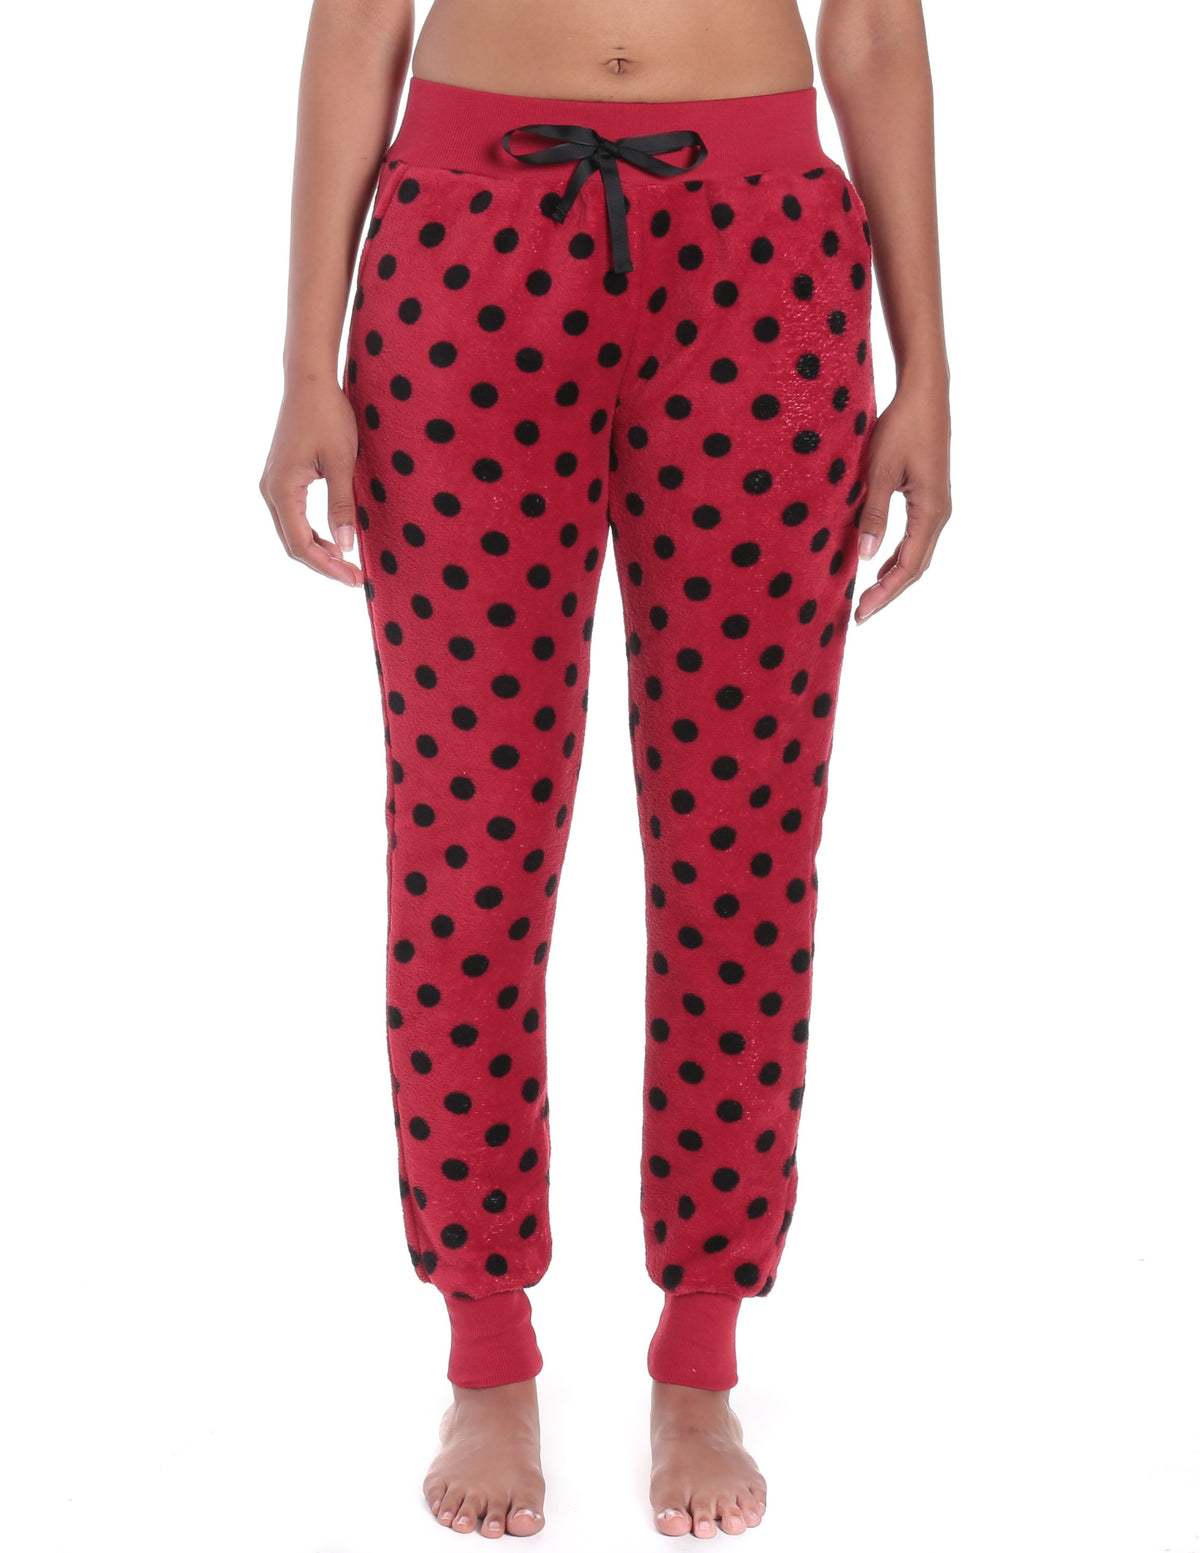 Women's Premium Coral Fleece Plush Jogger Lounge Pants - Polka Dots - Red/Black